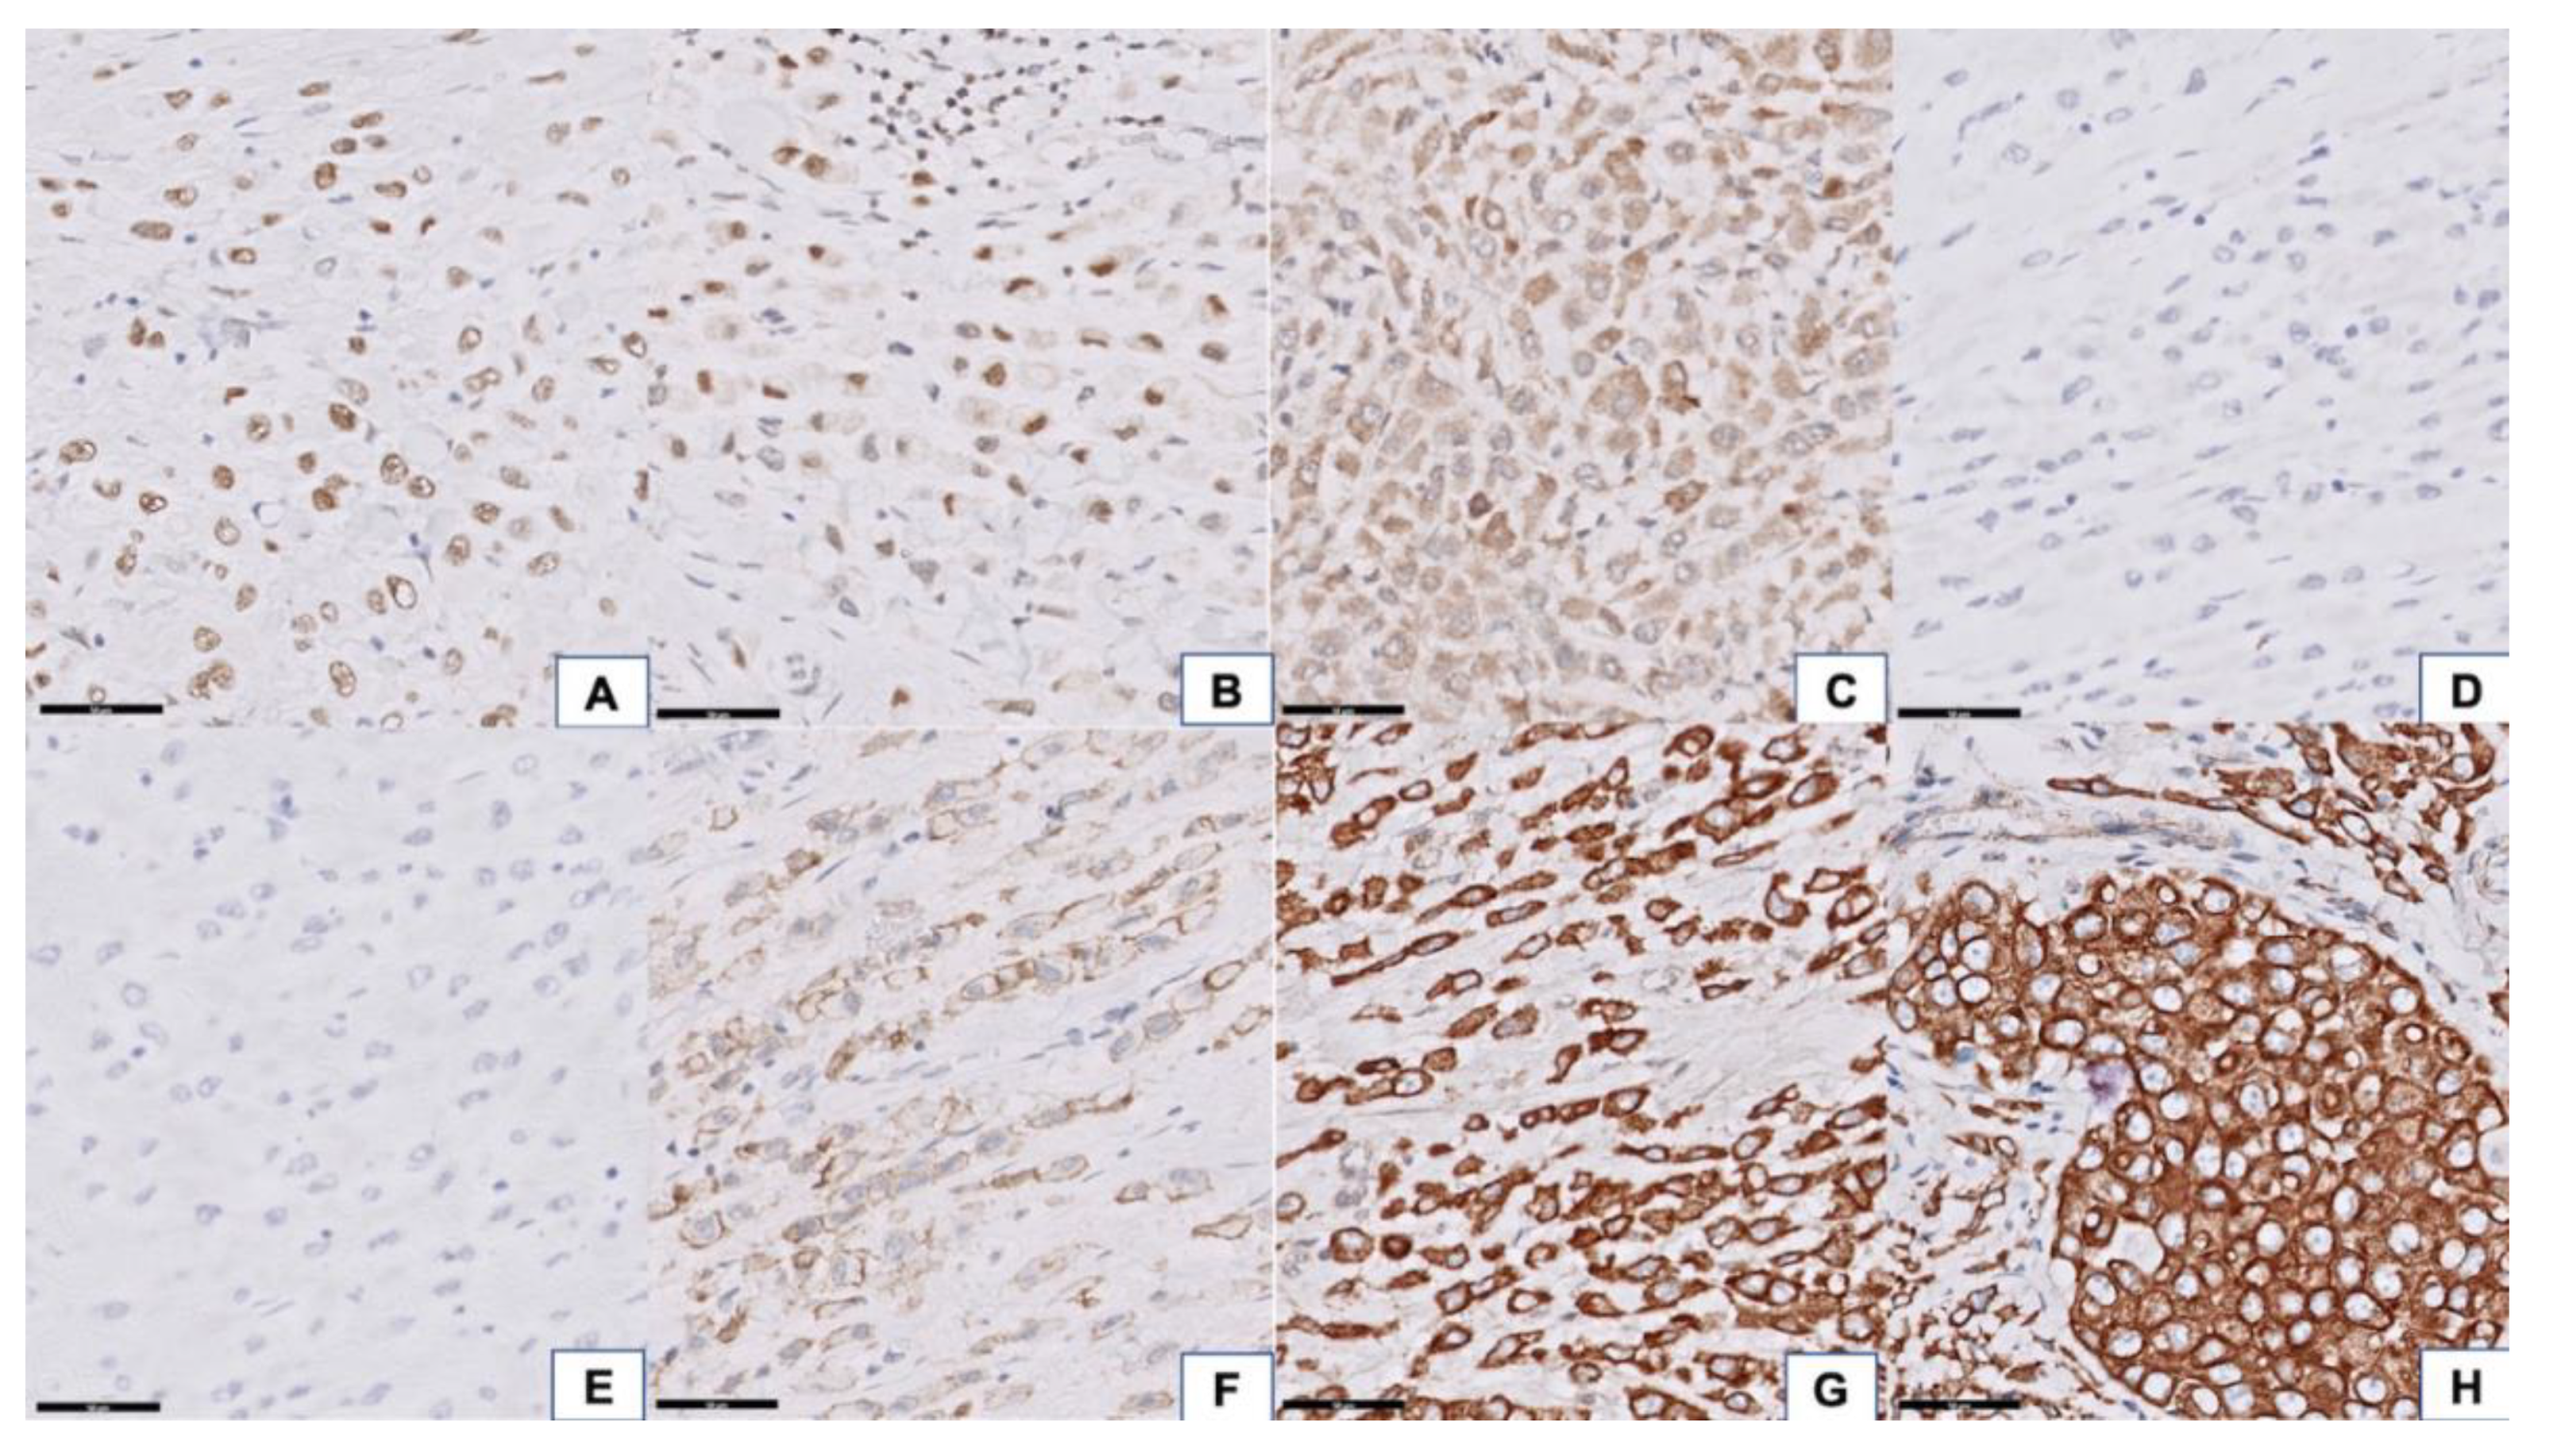 Signet ring cell carcinoma stock image. Image of pathology - 121118517